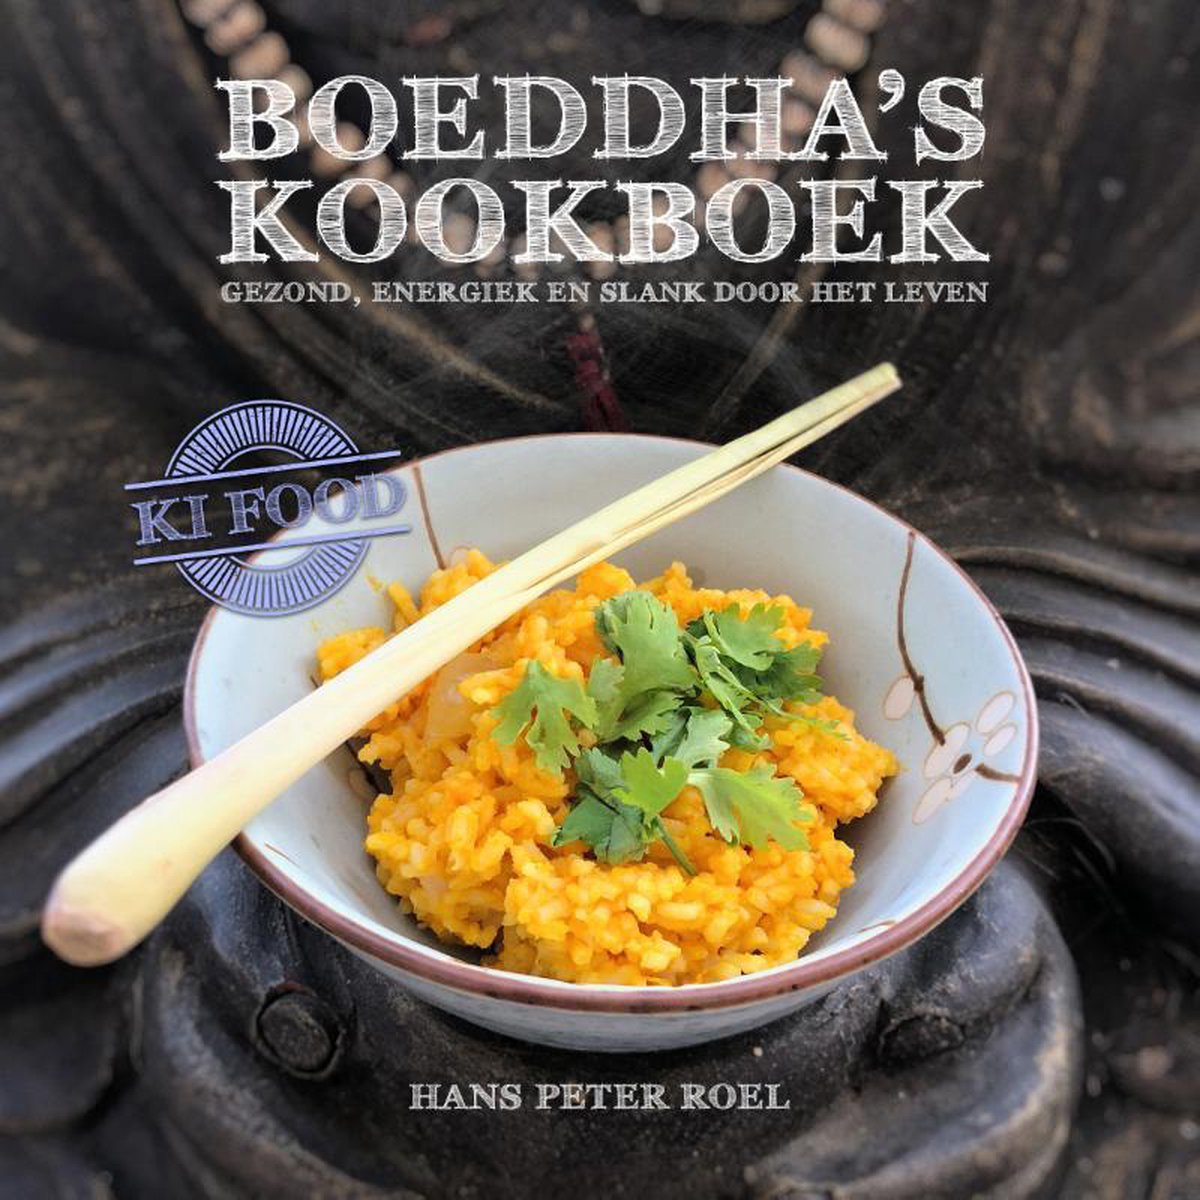 Boeddha's kookboek - Hans Peter Roel